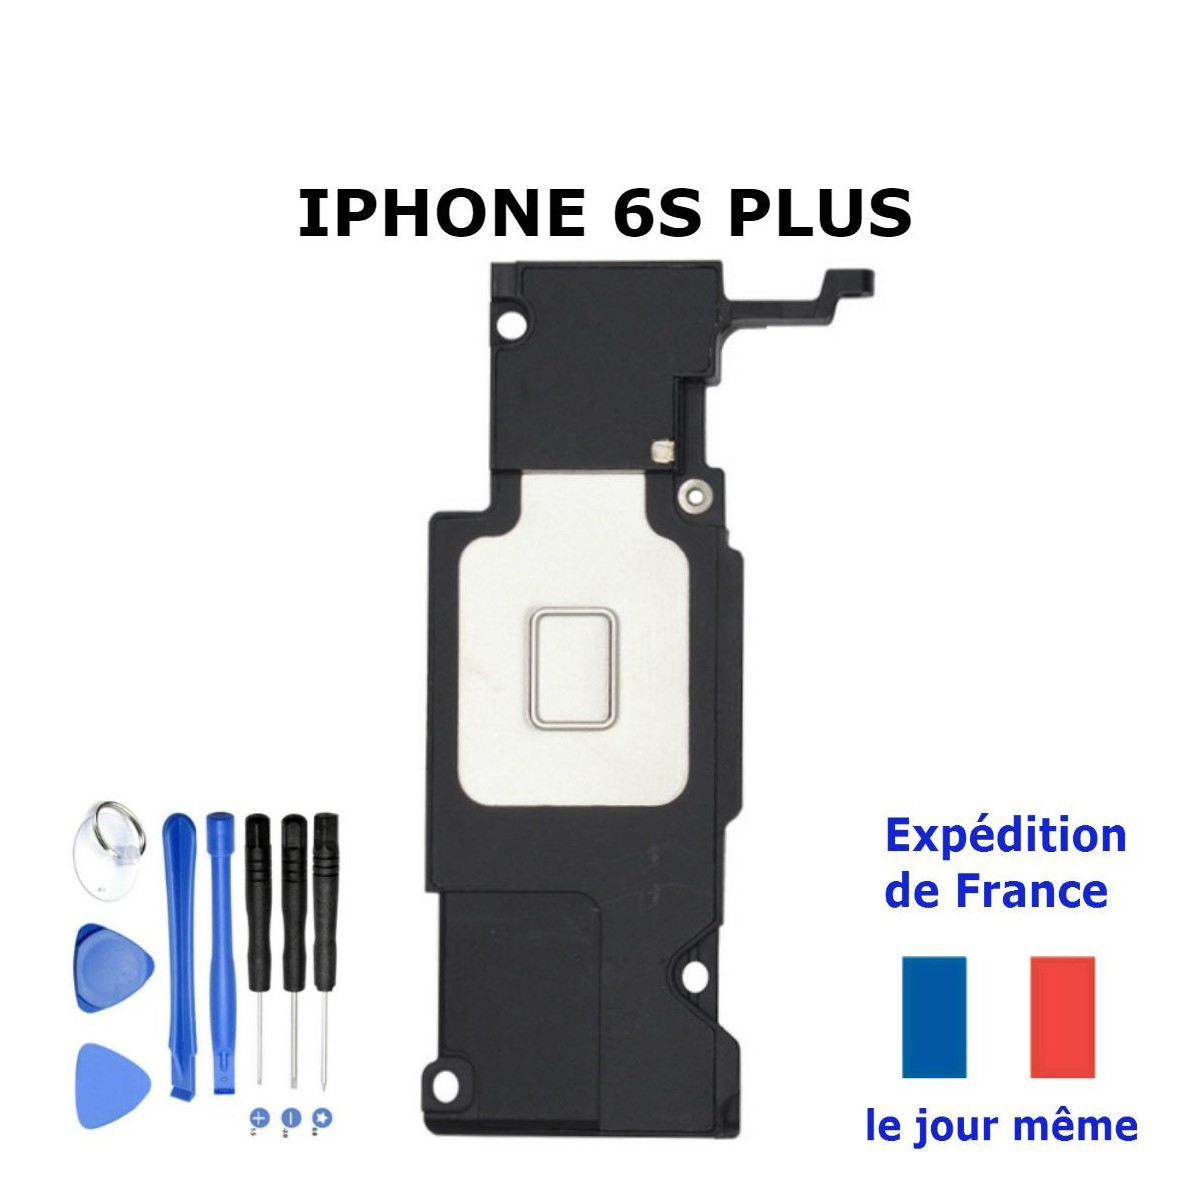 Haut-parleur externe iPhone 6S Plus + Outils